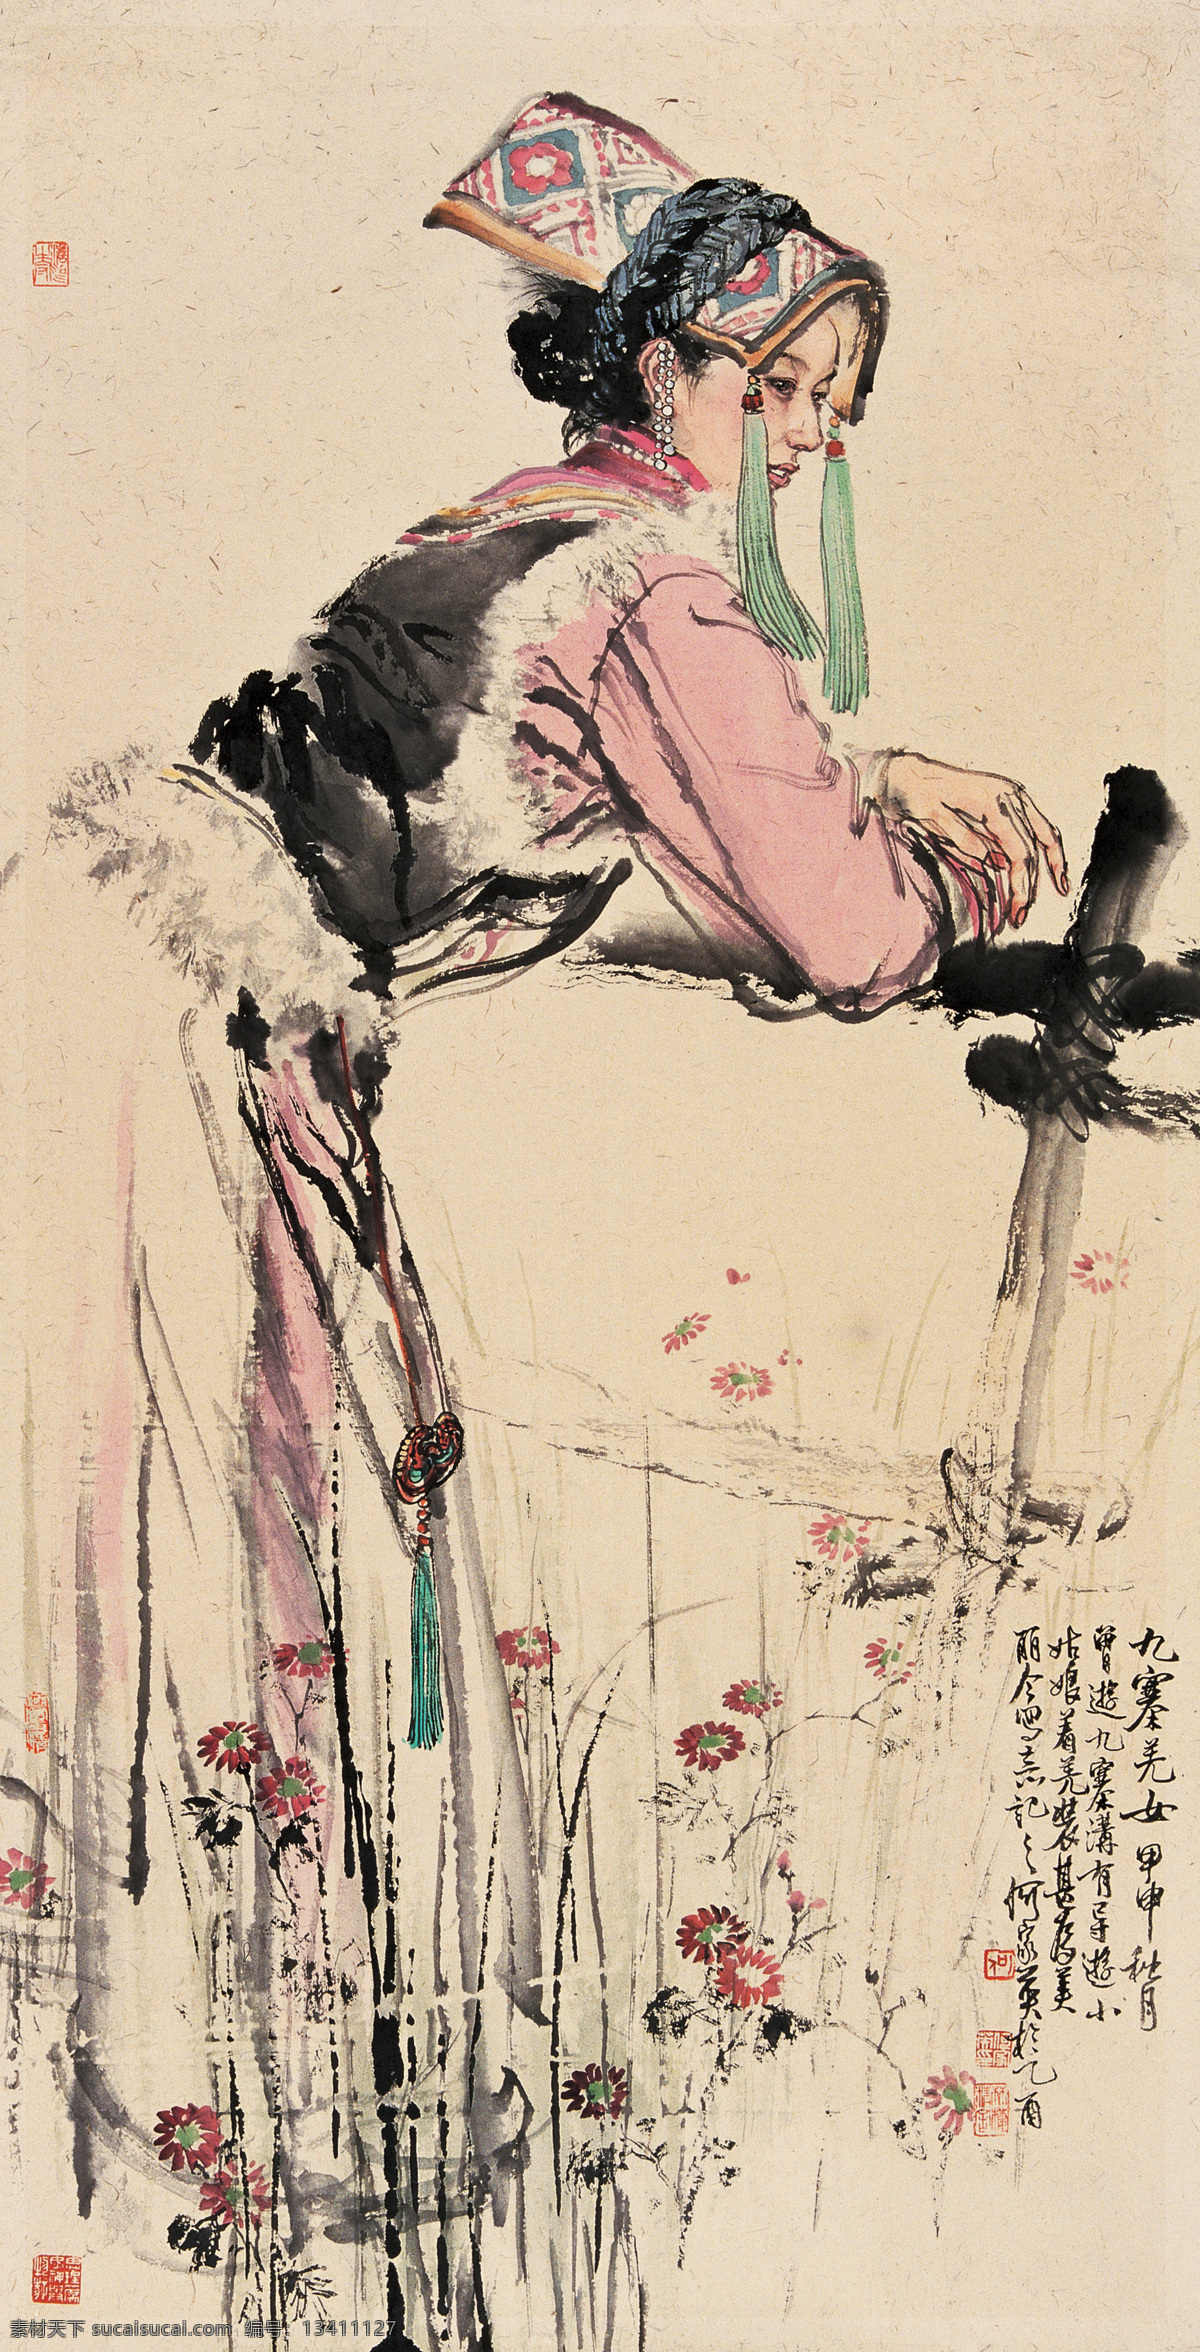 九寨羌女 何家英 羌族 人物 民族 红色 花朵 菊花 野花 帽子 女人 水墨 风景 国画 当代中国画 绘画书法 文化艺术